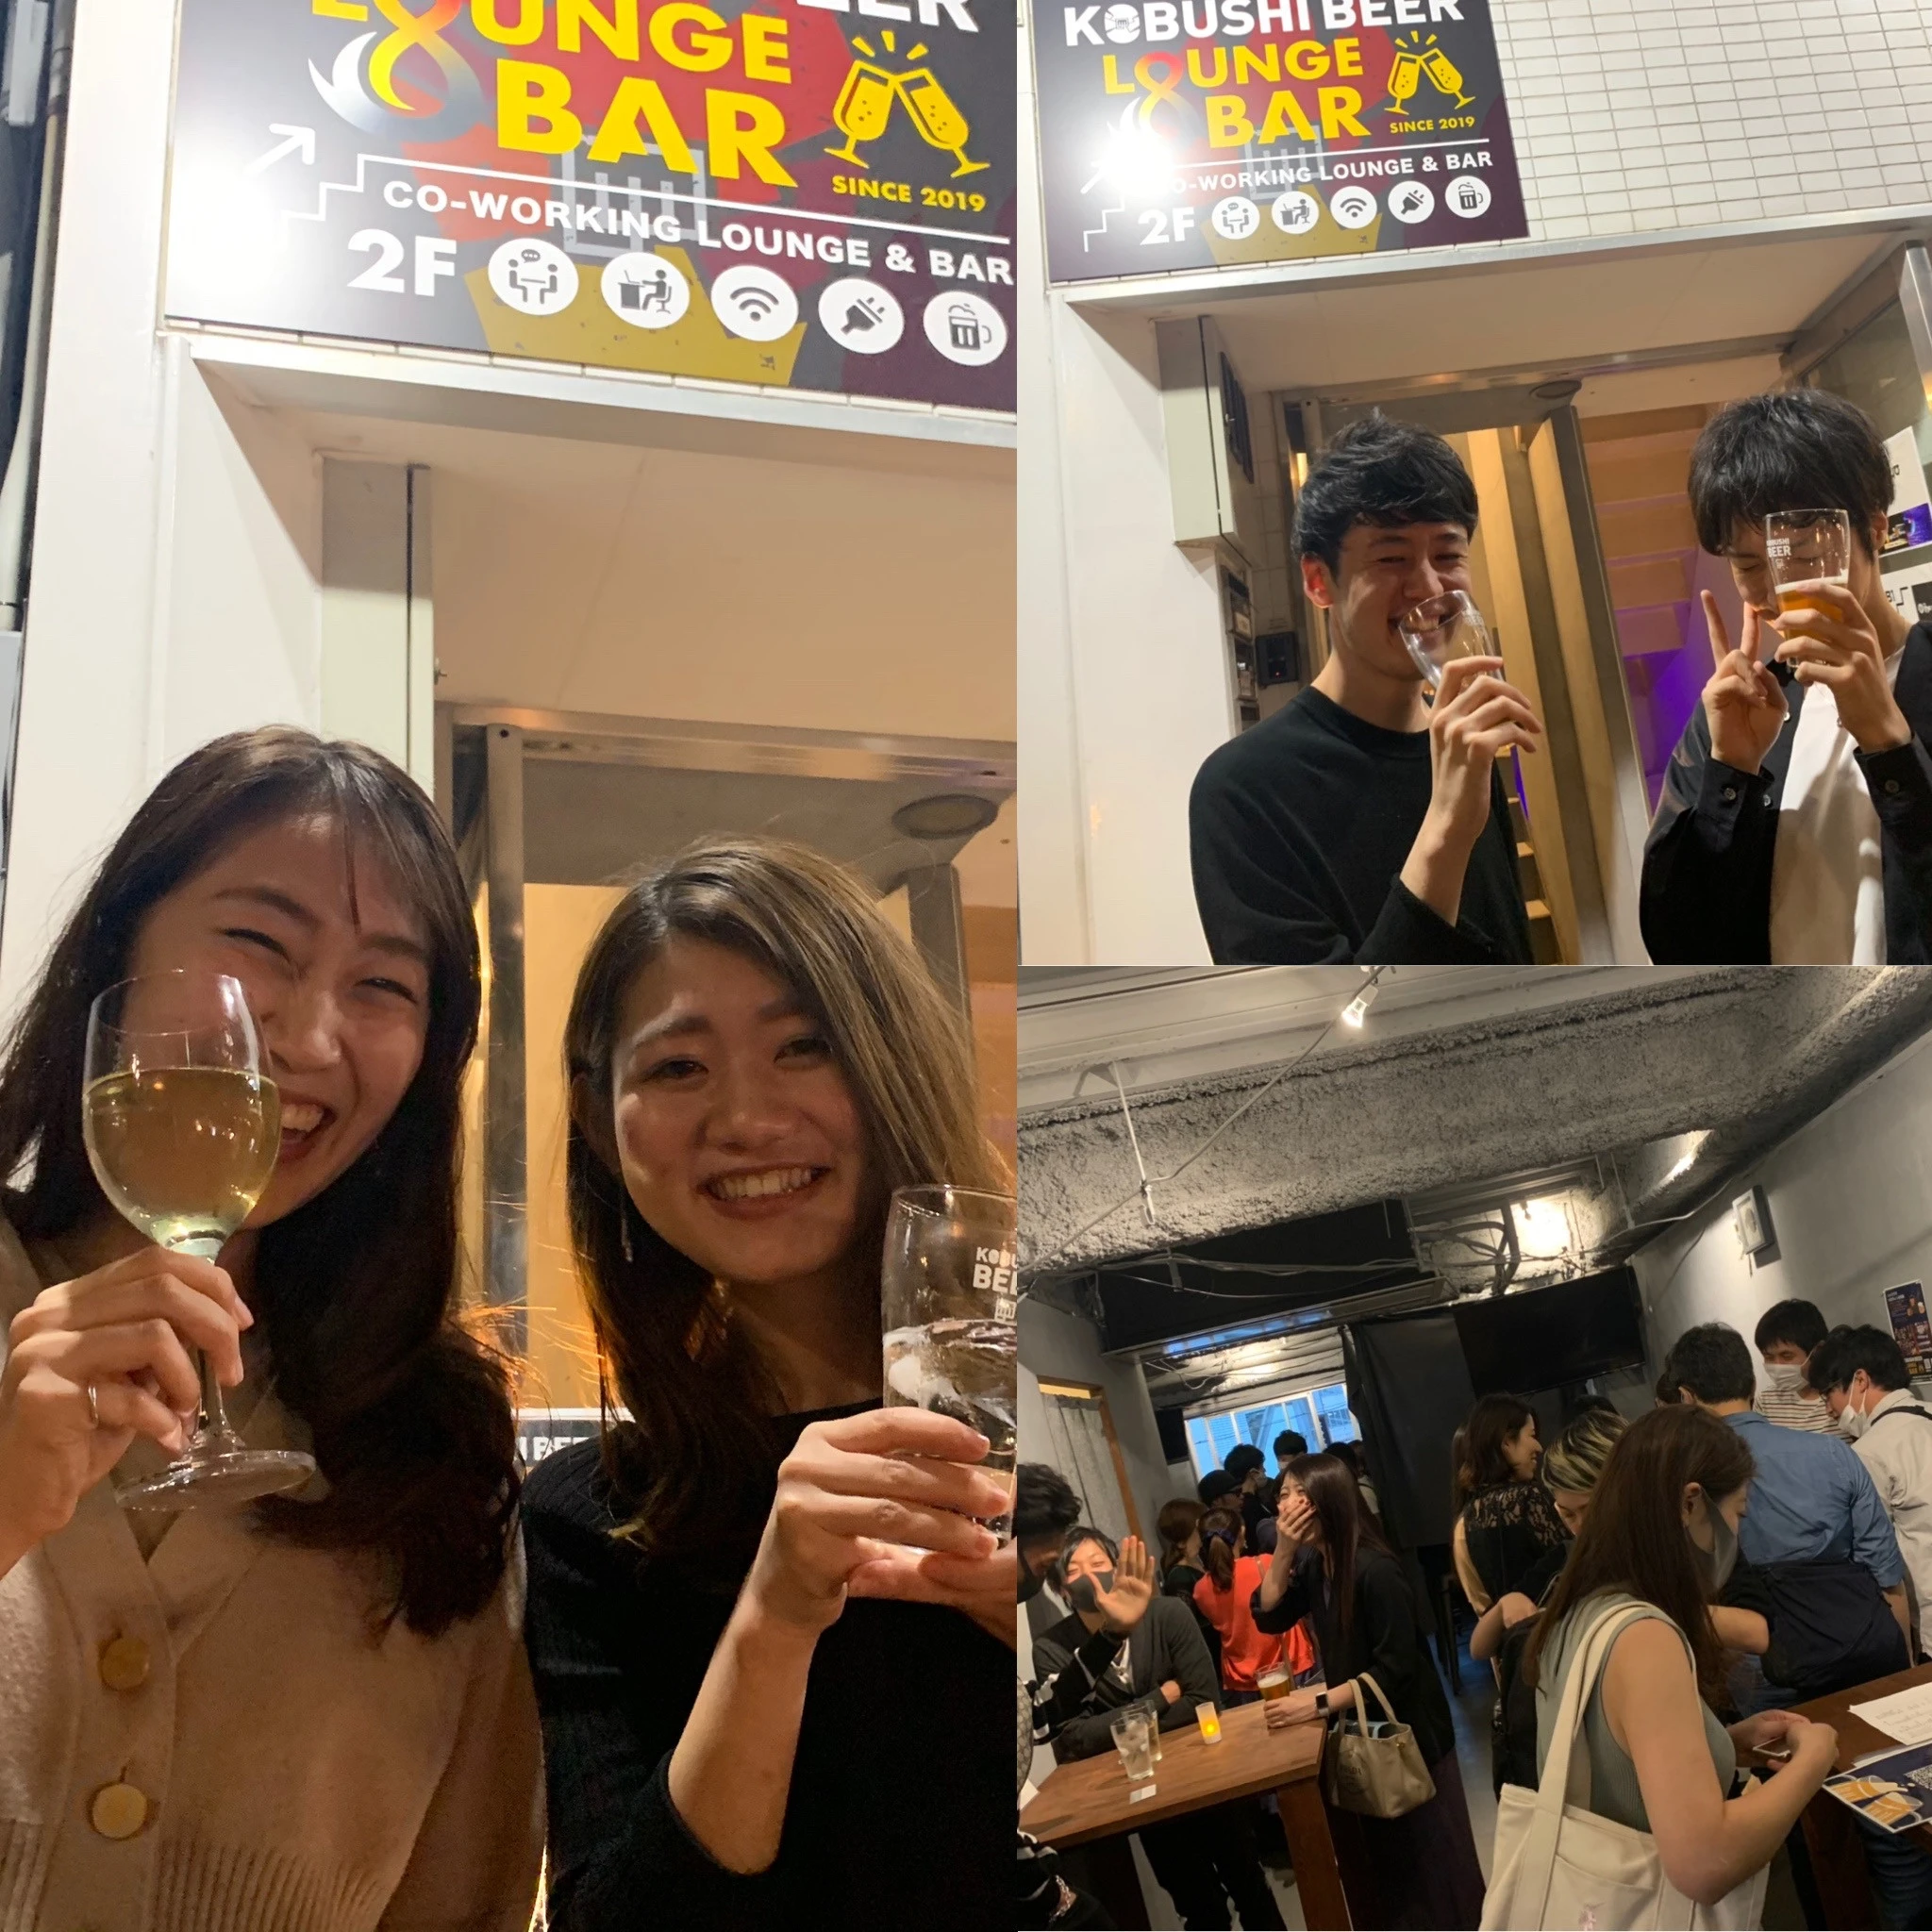 【東京の街コン】KOBUSHI BEER LOUNGE & BAR主催 2020年10月31日